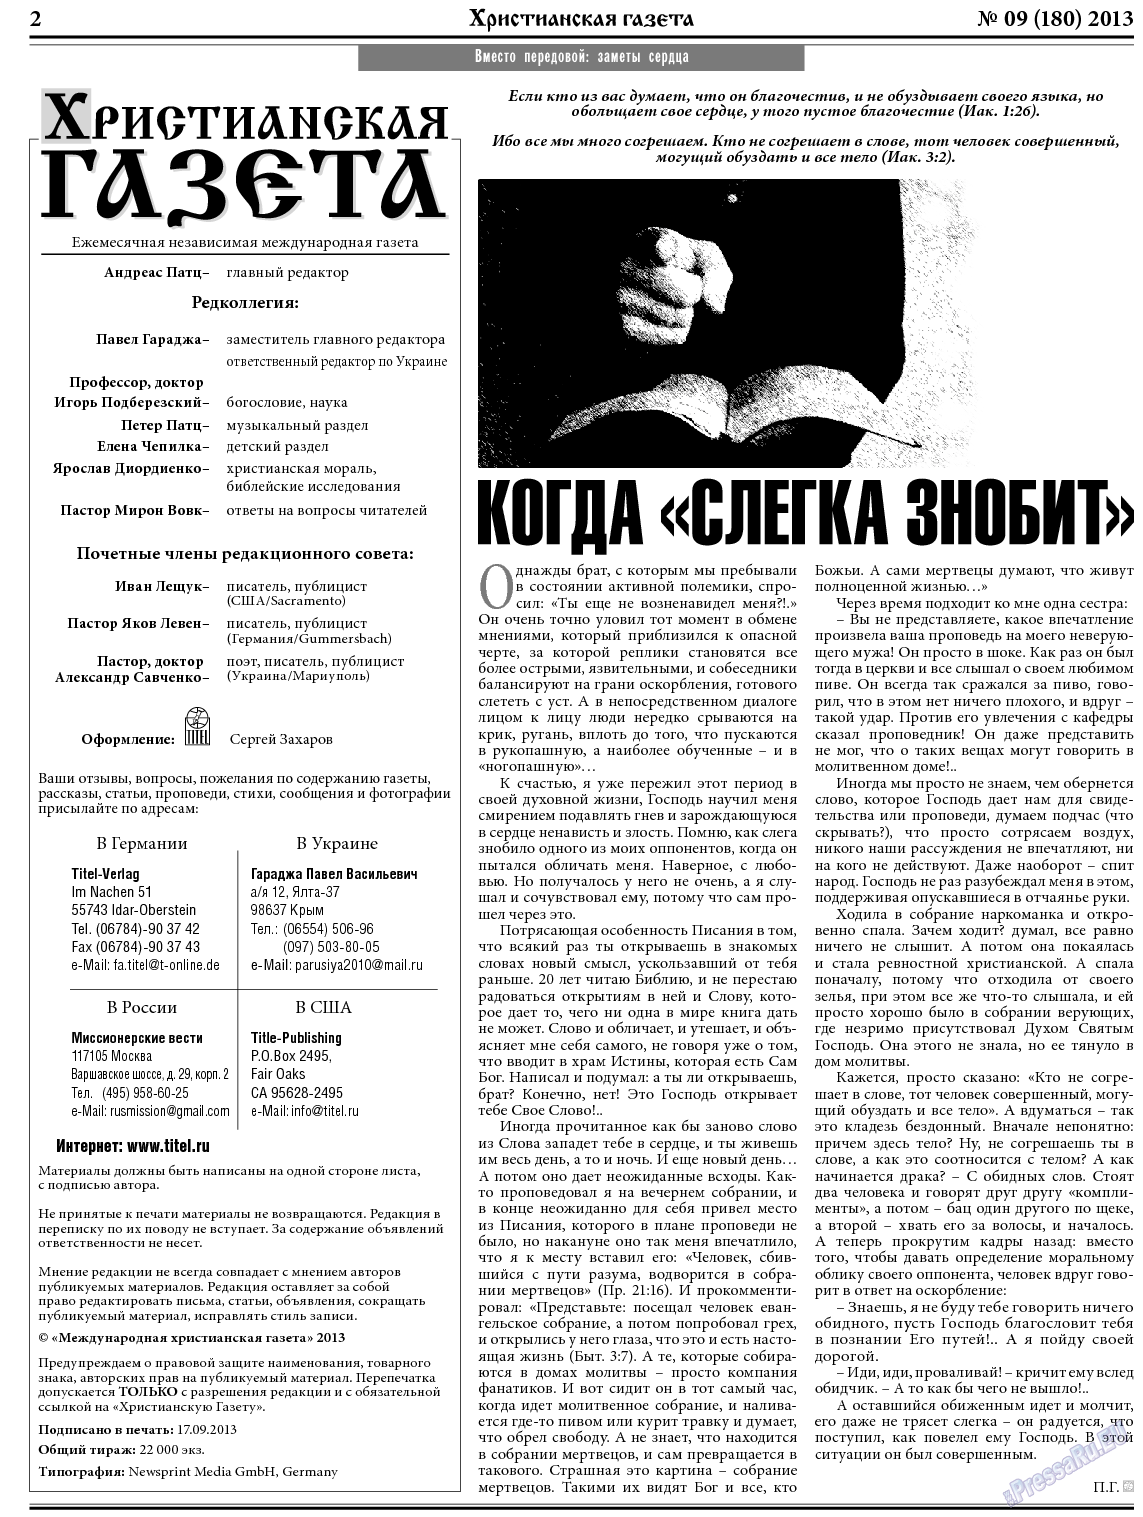 Христианская газета, газета. 2013 №9 стр.2